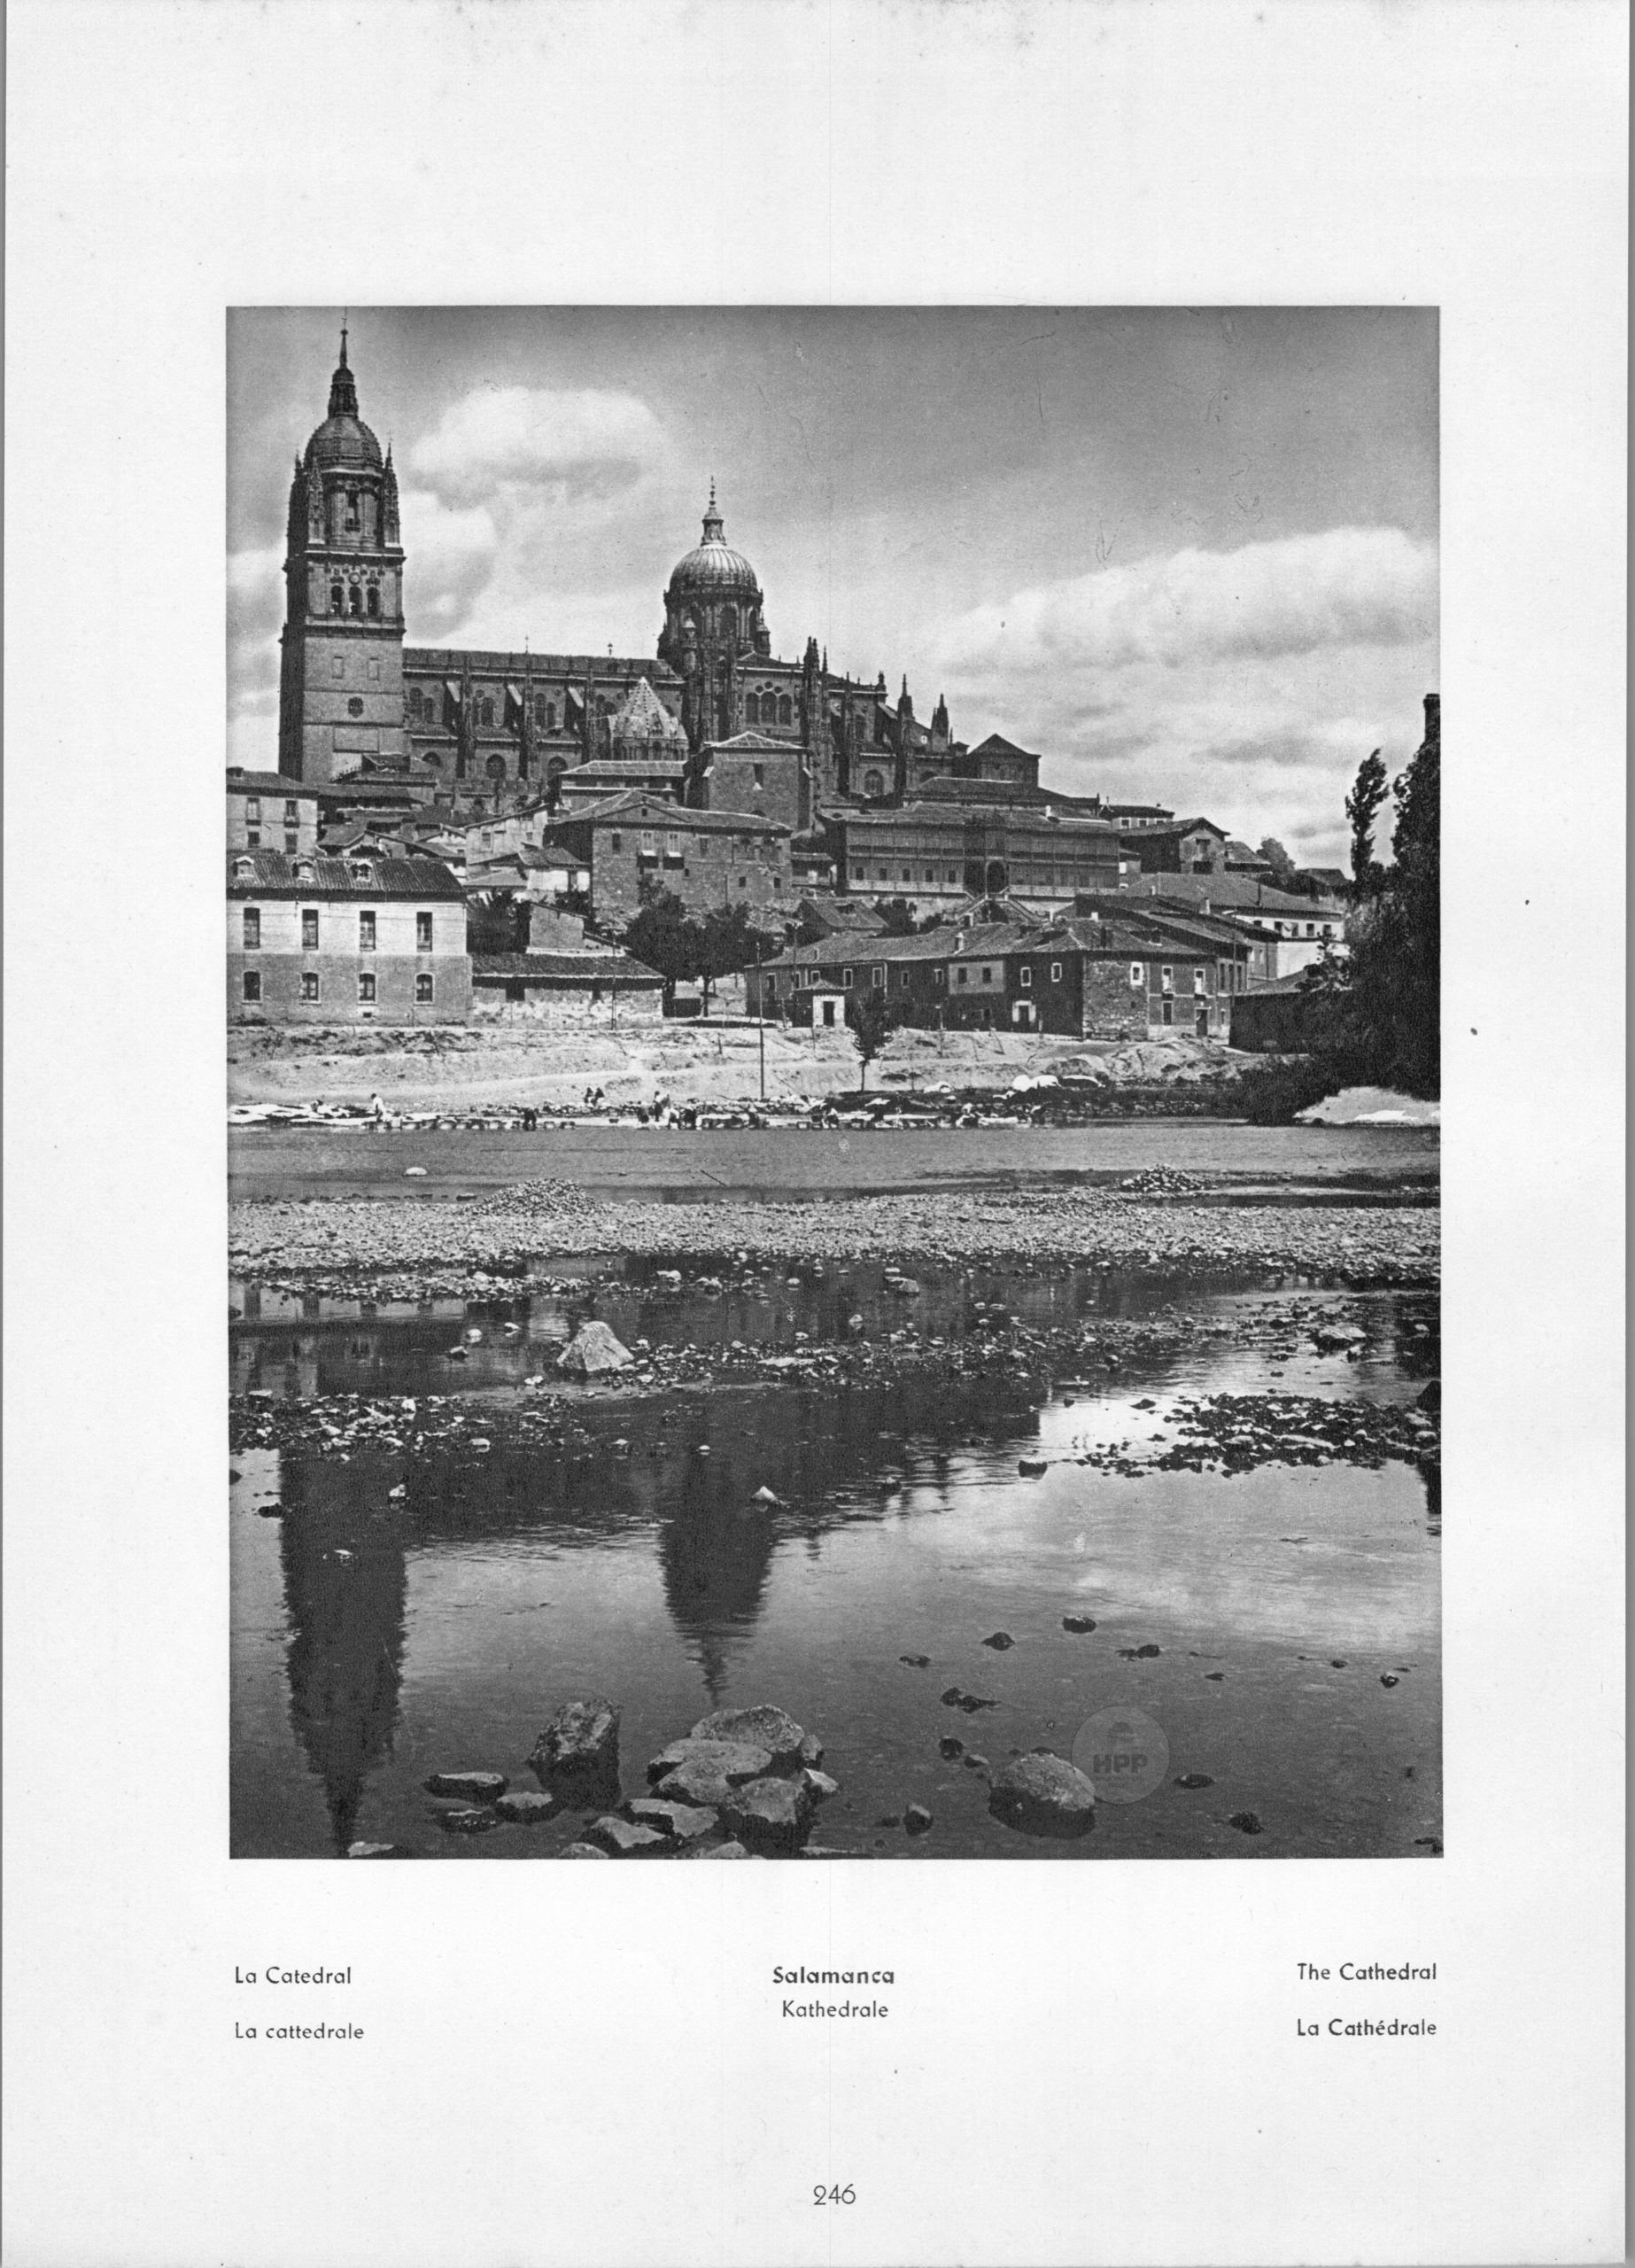 Salamanca - La Catedral